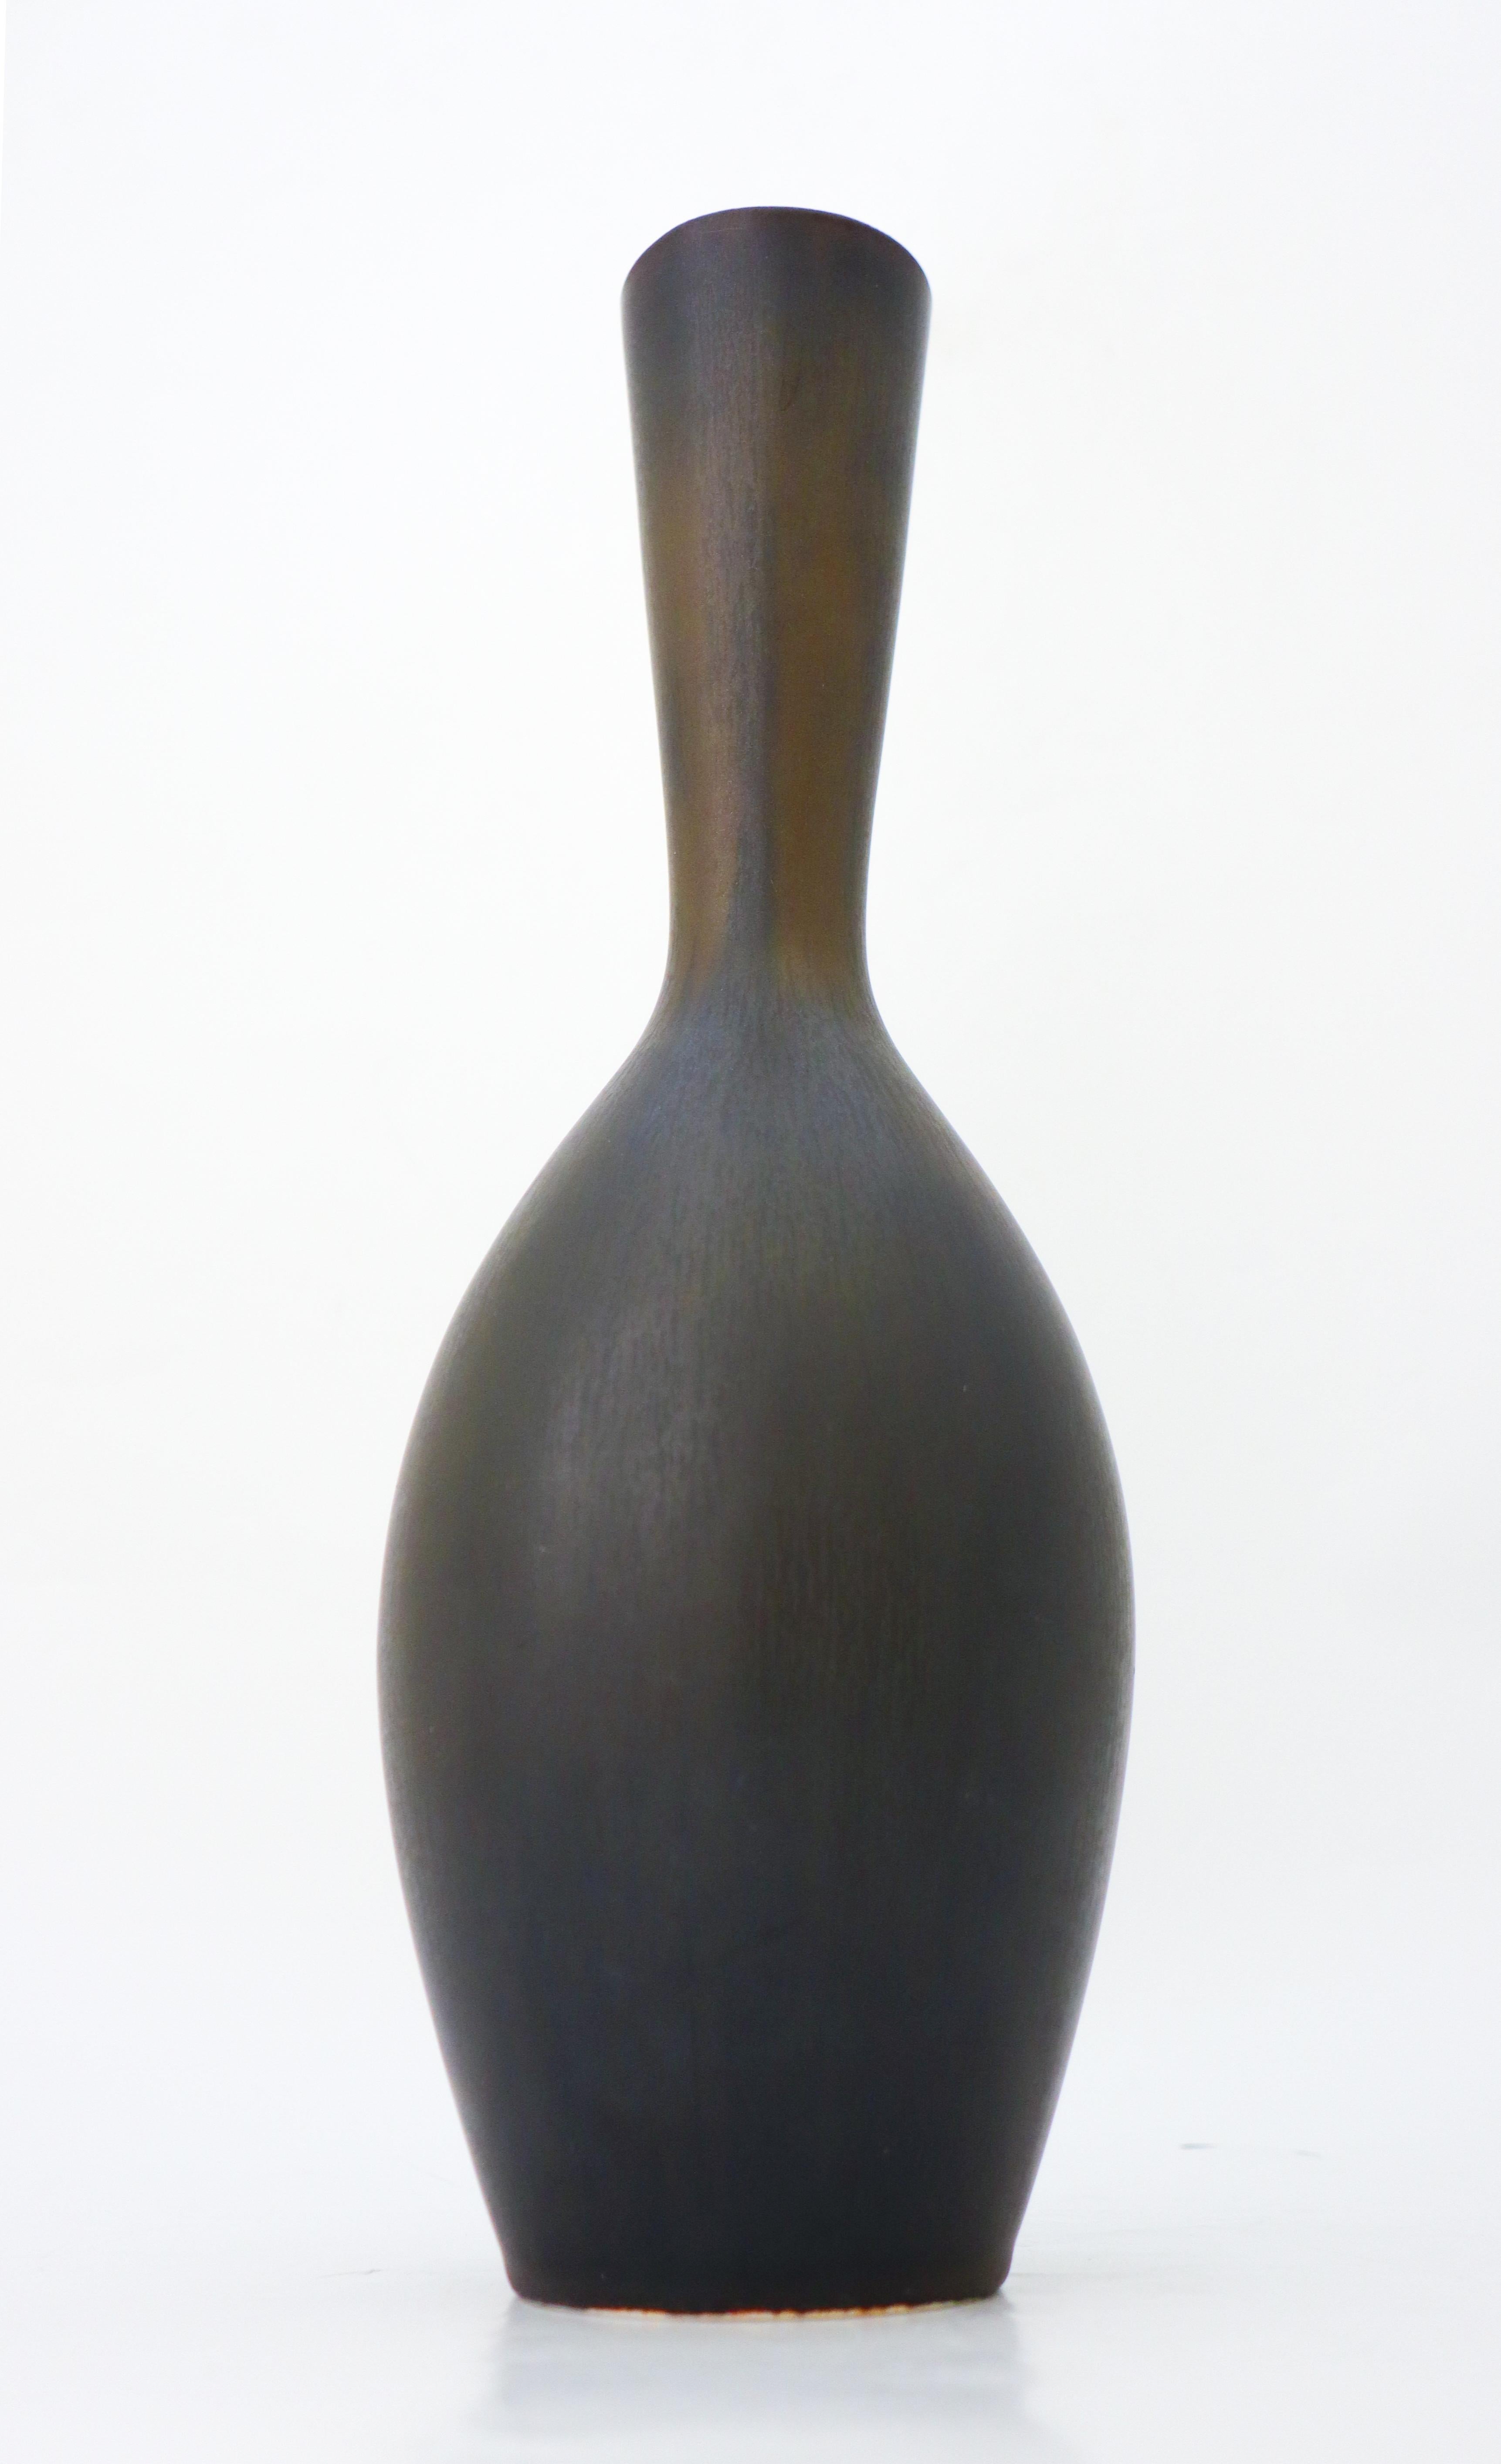 Eine große schwarze Vase, entworfen von Carl-Harry Stålhane bei Rörstrand. Die Vase ist 34 cm (13,6